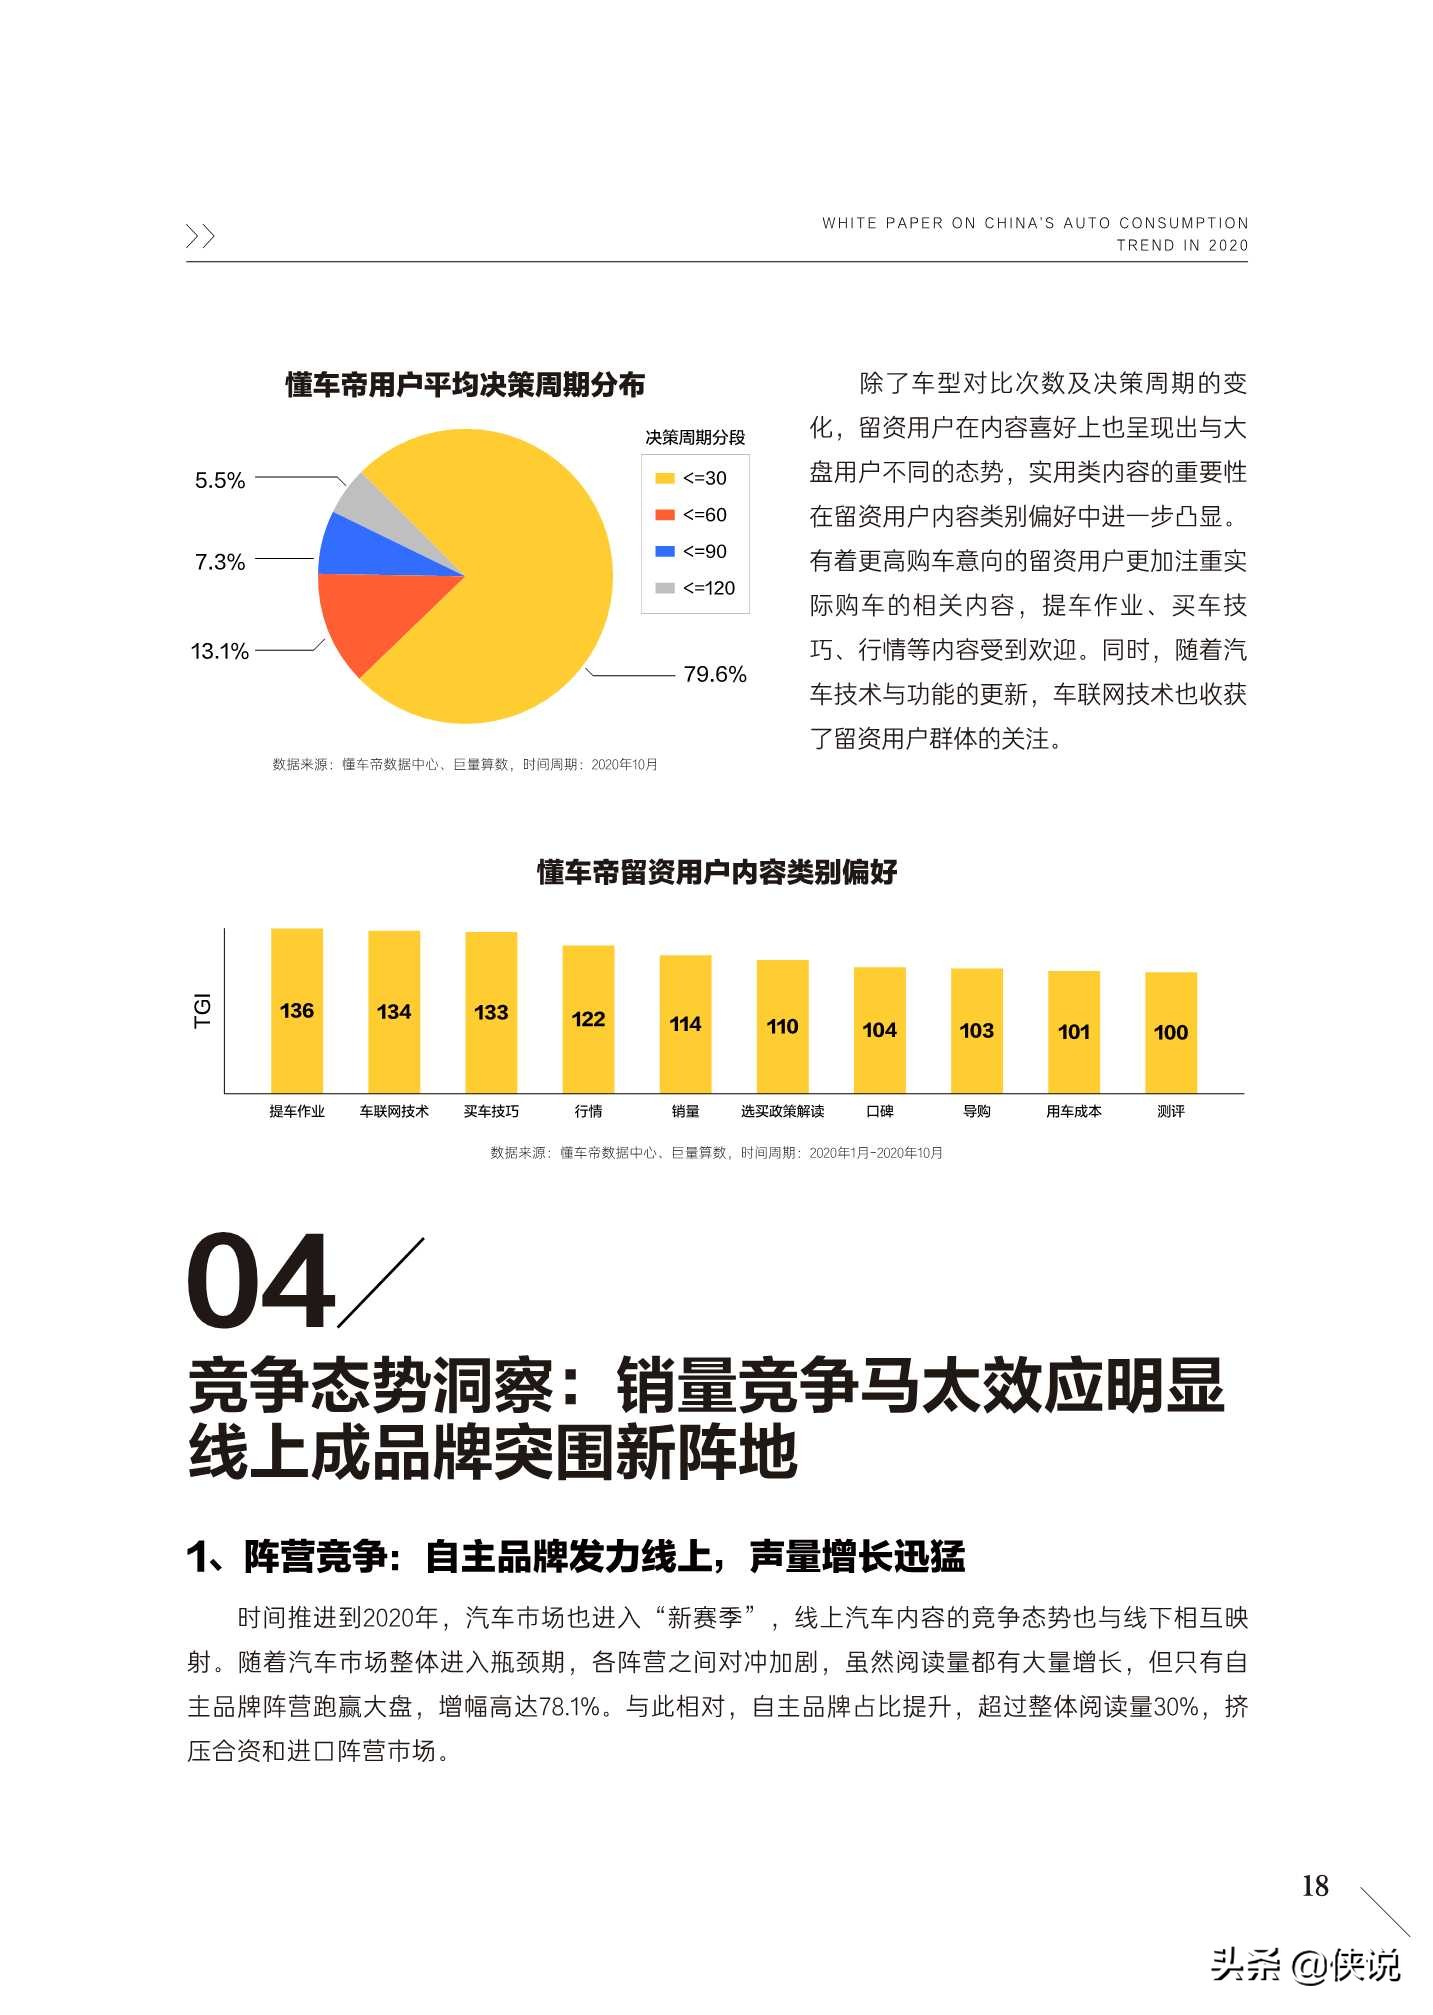 2020中国汽车用户消费洞察白皮书